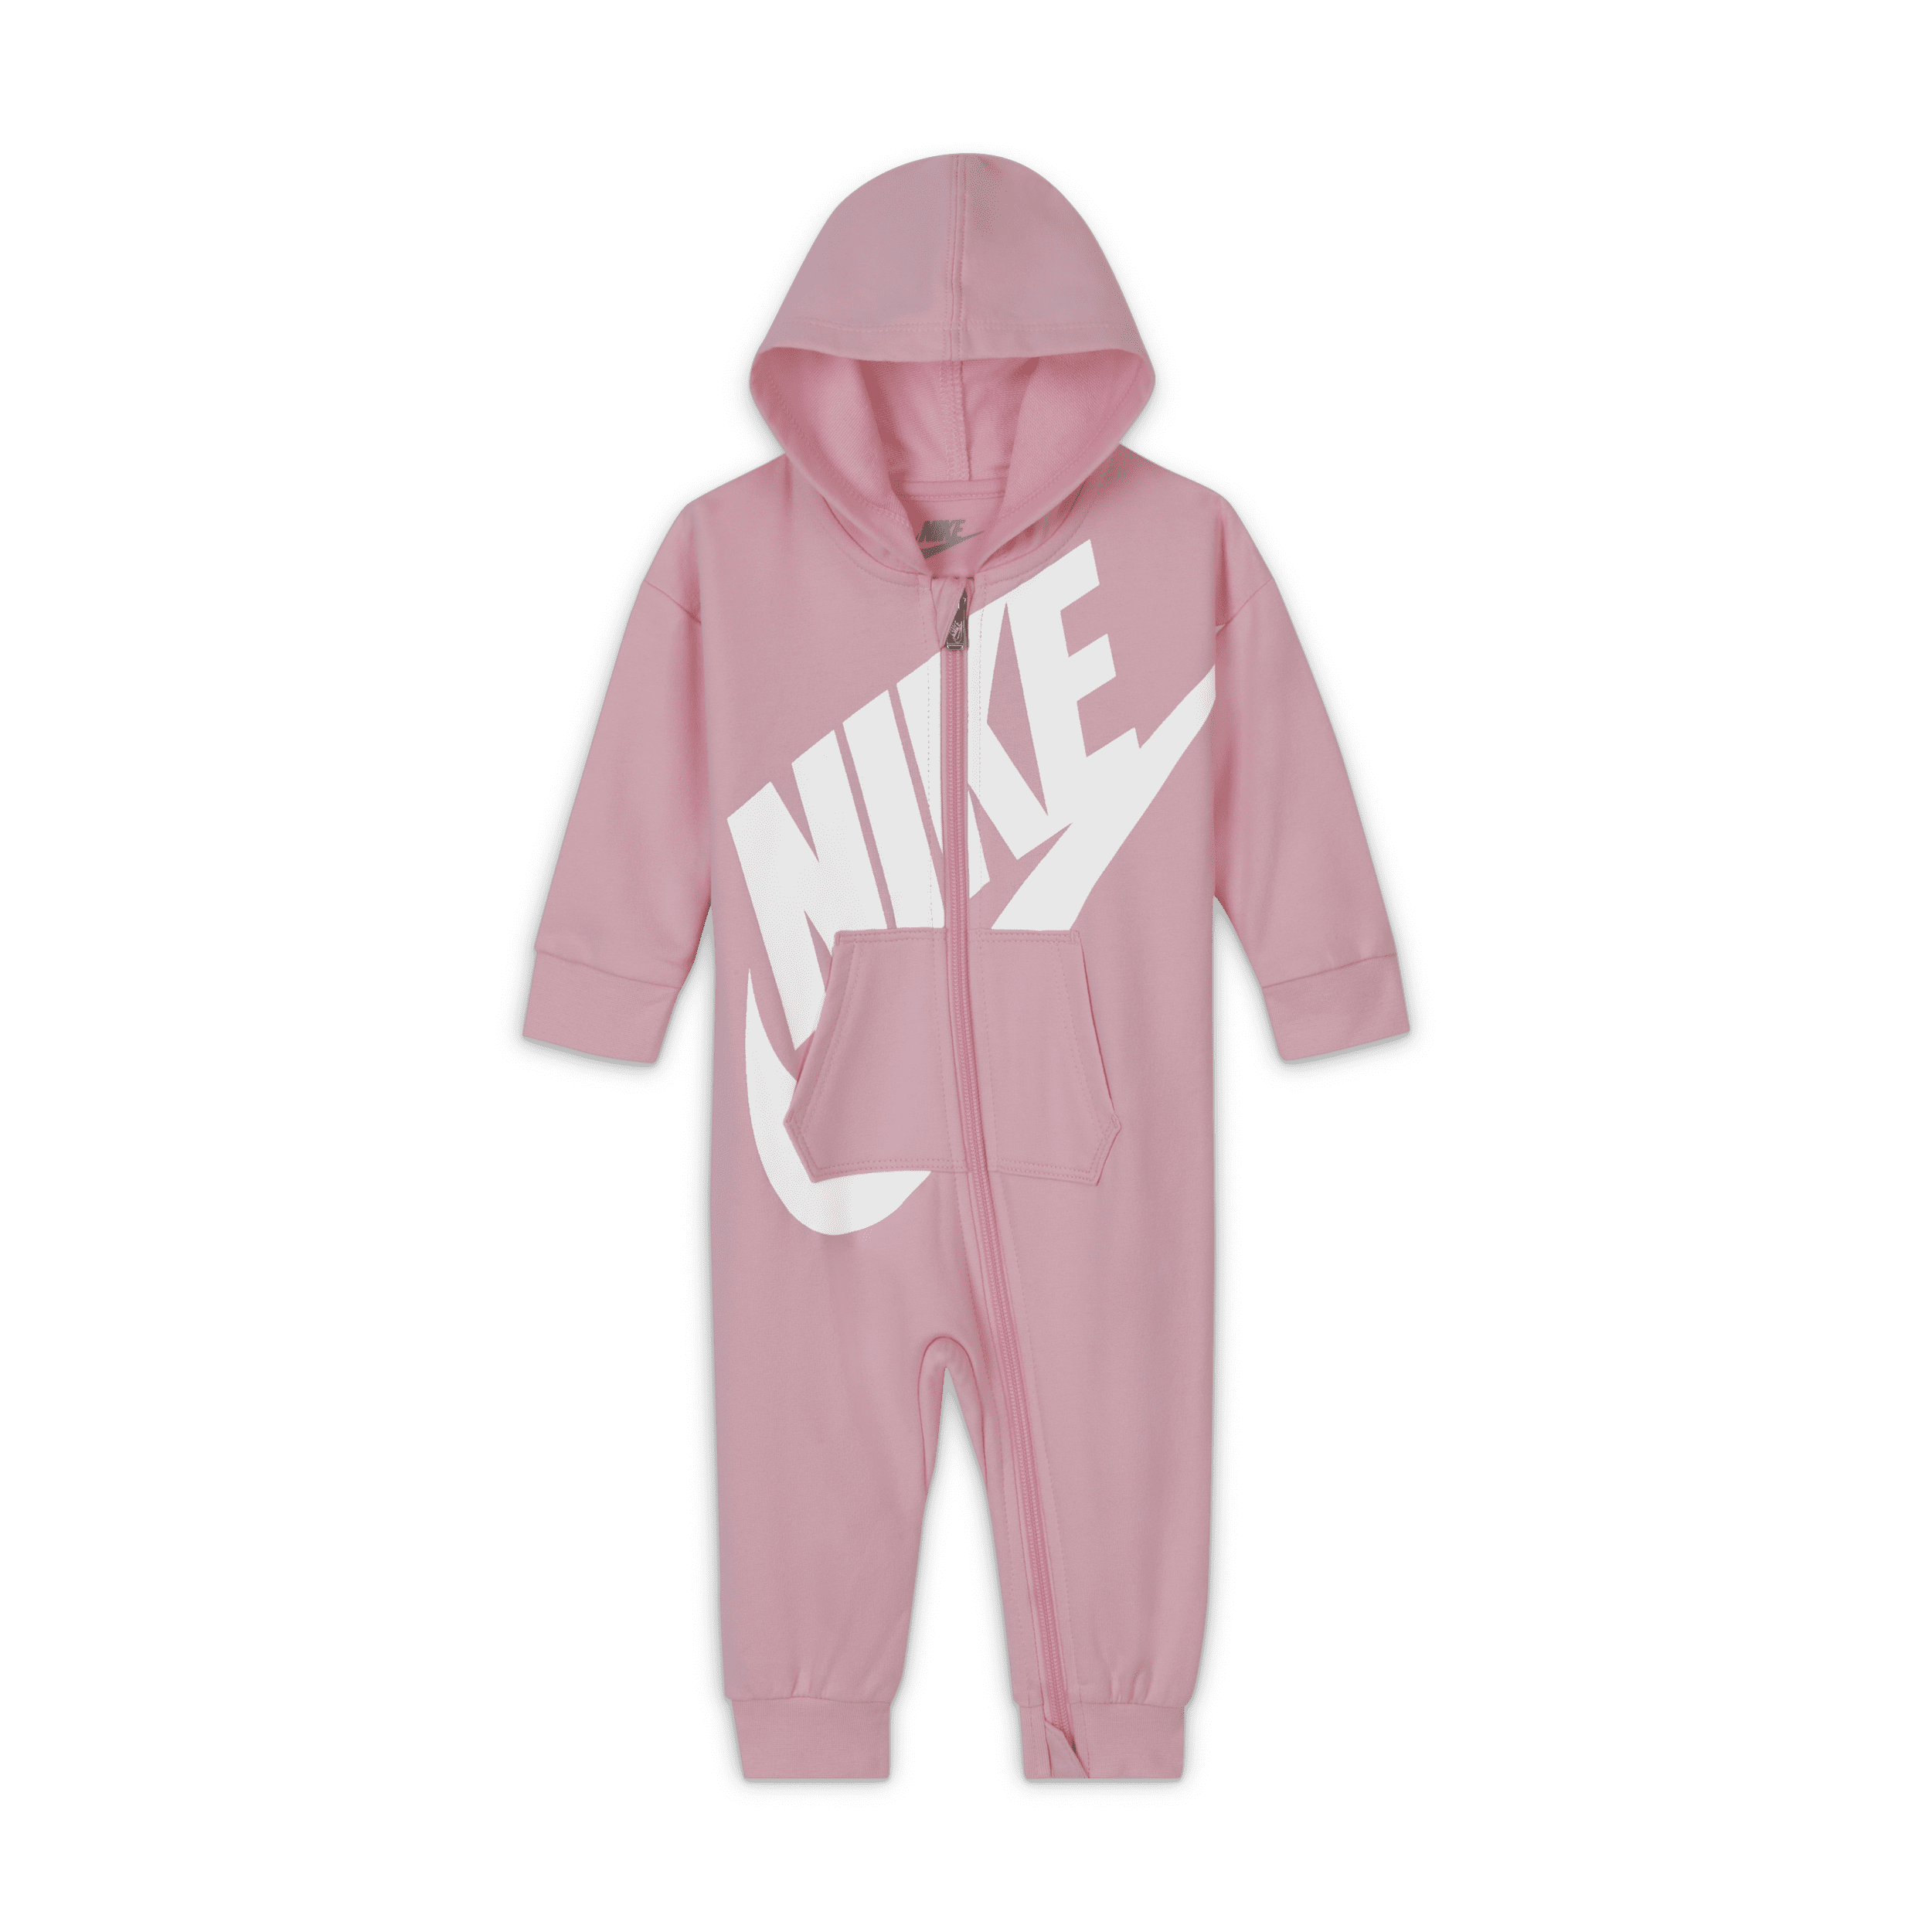 Nike Mono con cremallera completa - Bebé (0-9 M) - Rosa